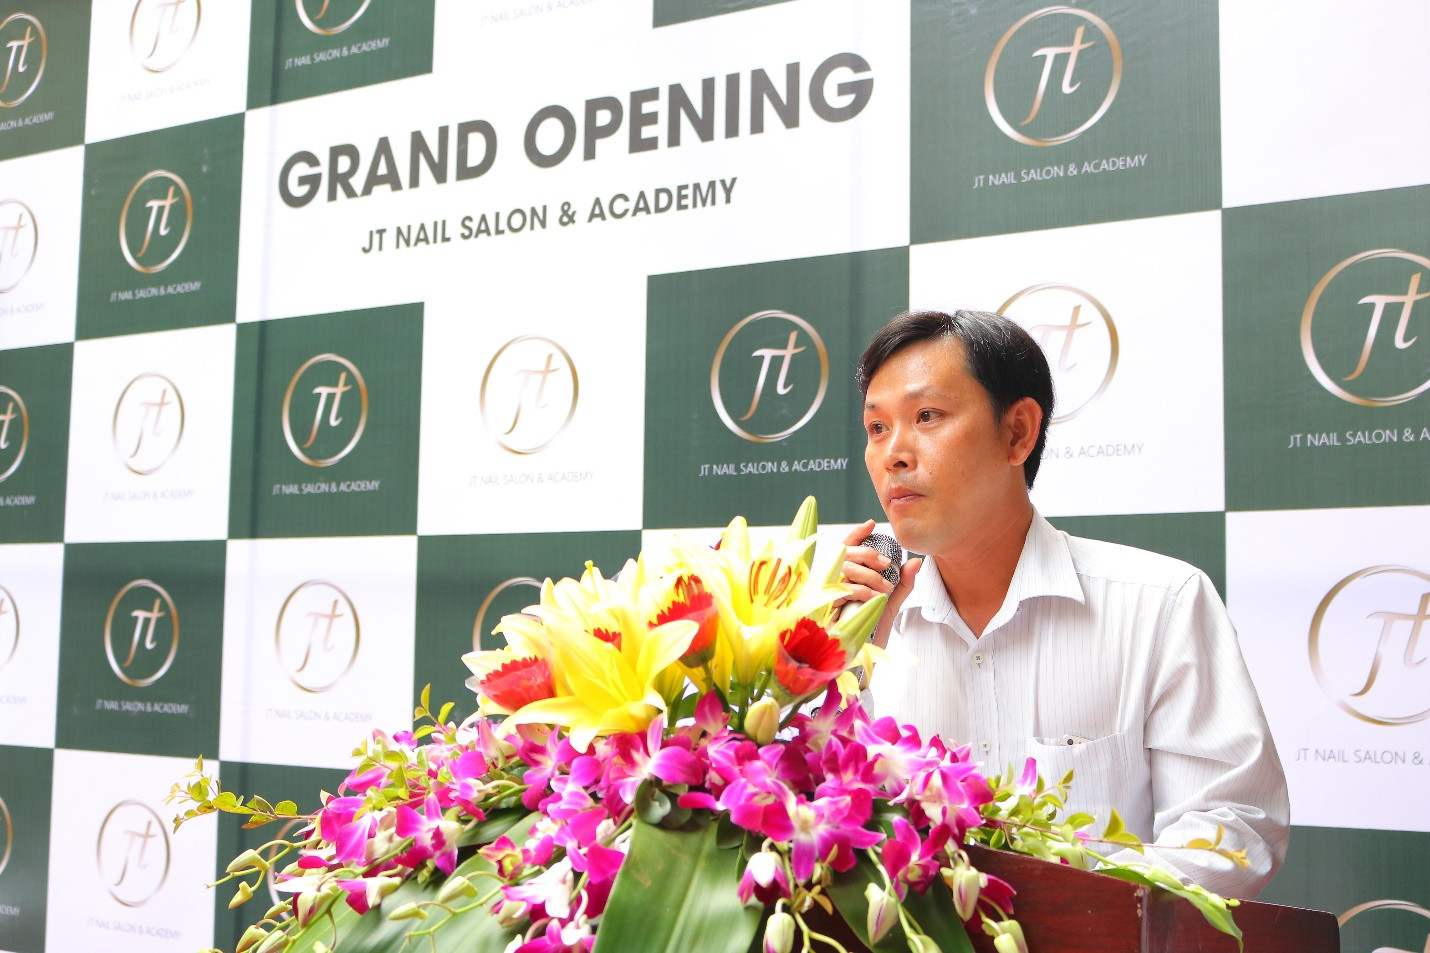 Khai trương JT Nail & Academy tại Hà Nội - Tràn ngập nhiều ưu đãi hấp dẫn